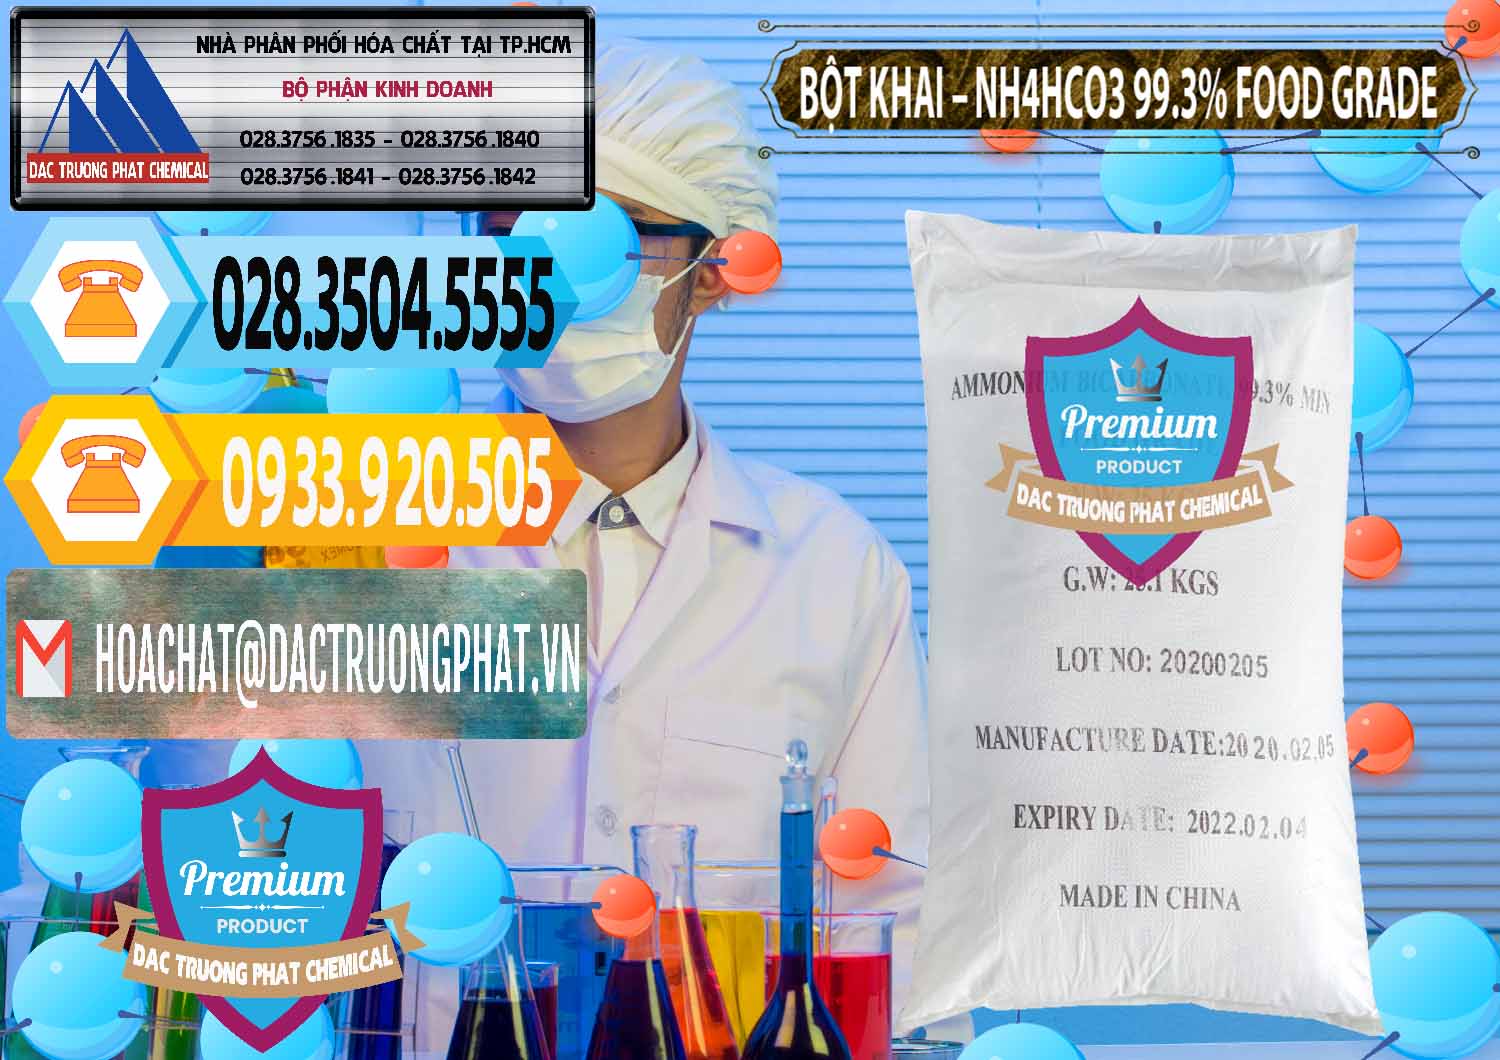 Nhà cung cấp _ bán Ammonium Bicarbonate – Bột Khai NH4HCO3 Food Grade Trung Quốc China - 0019 - Nơi chuyên nhập khẩu và phân phối hóa chất tại TP.HCM - hoachattayrua.net